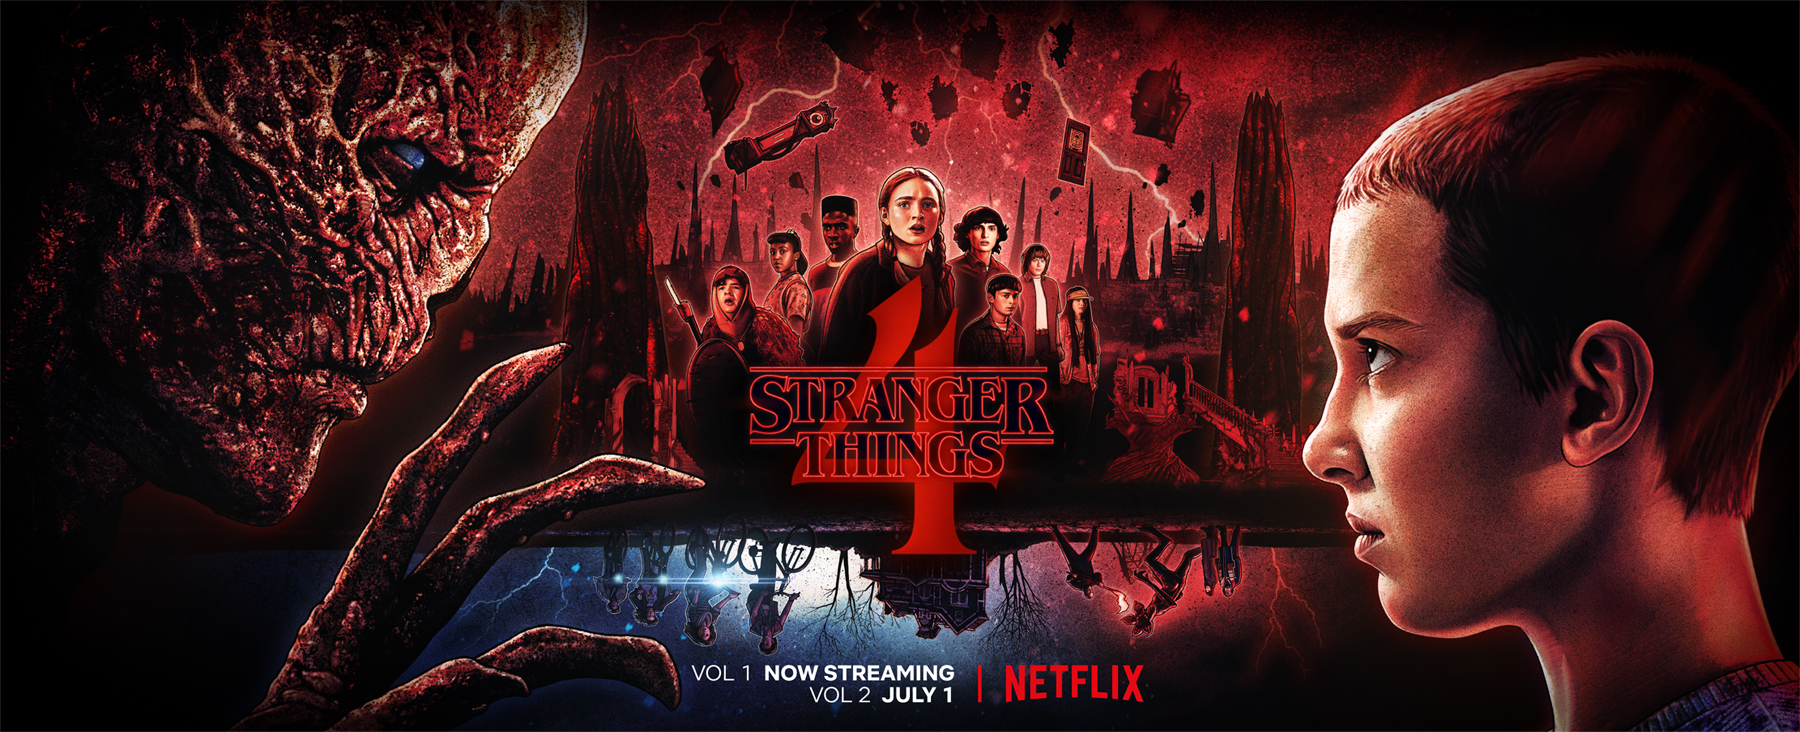 Stranger Things Season 4 Volume 2 VECNA'S RED  